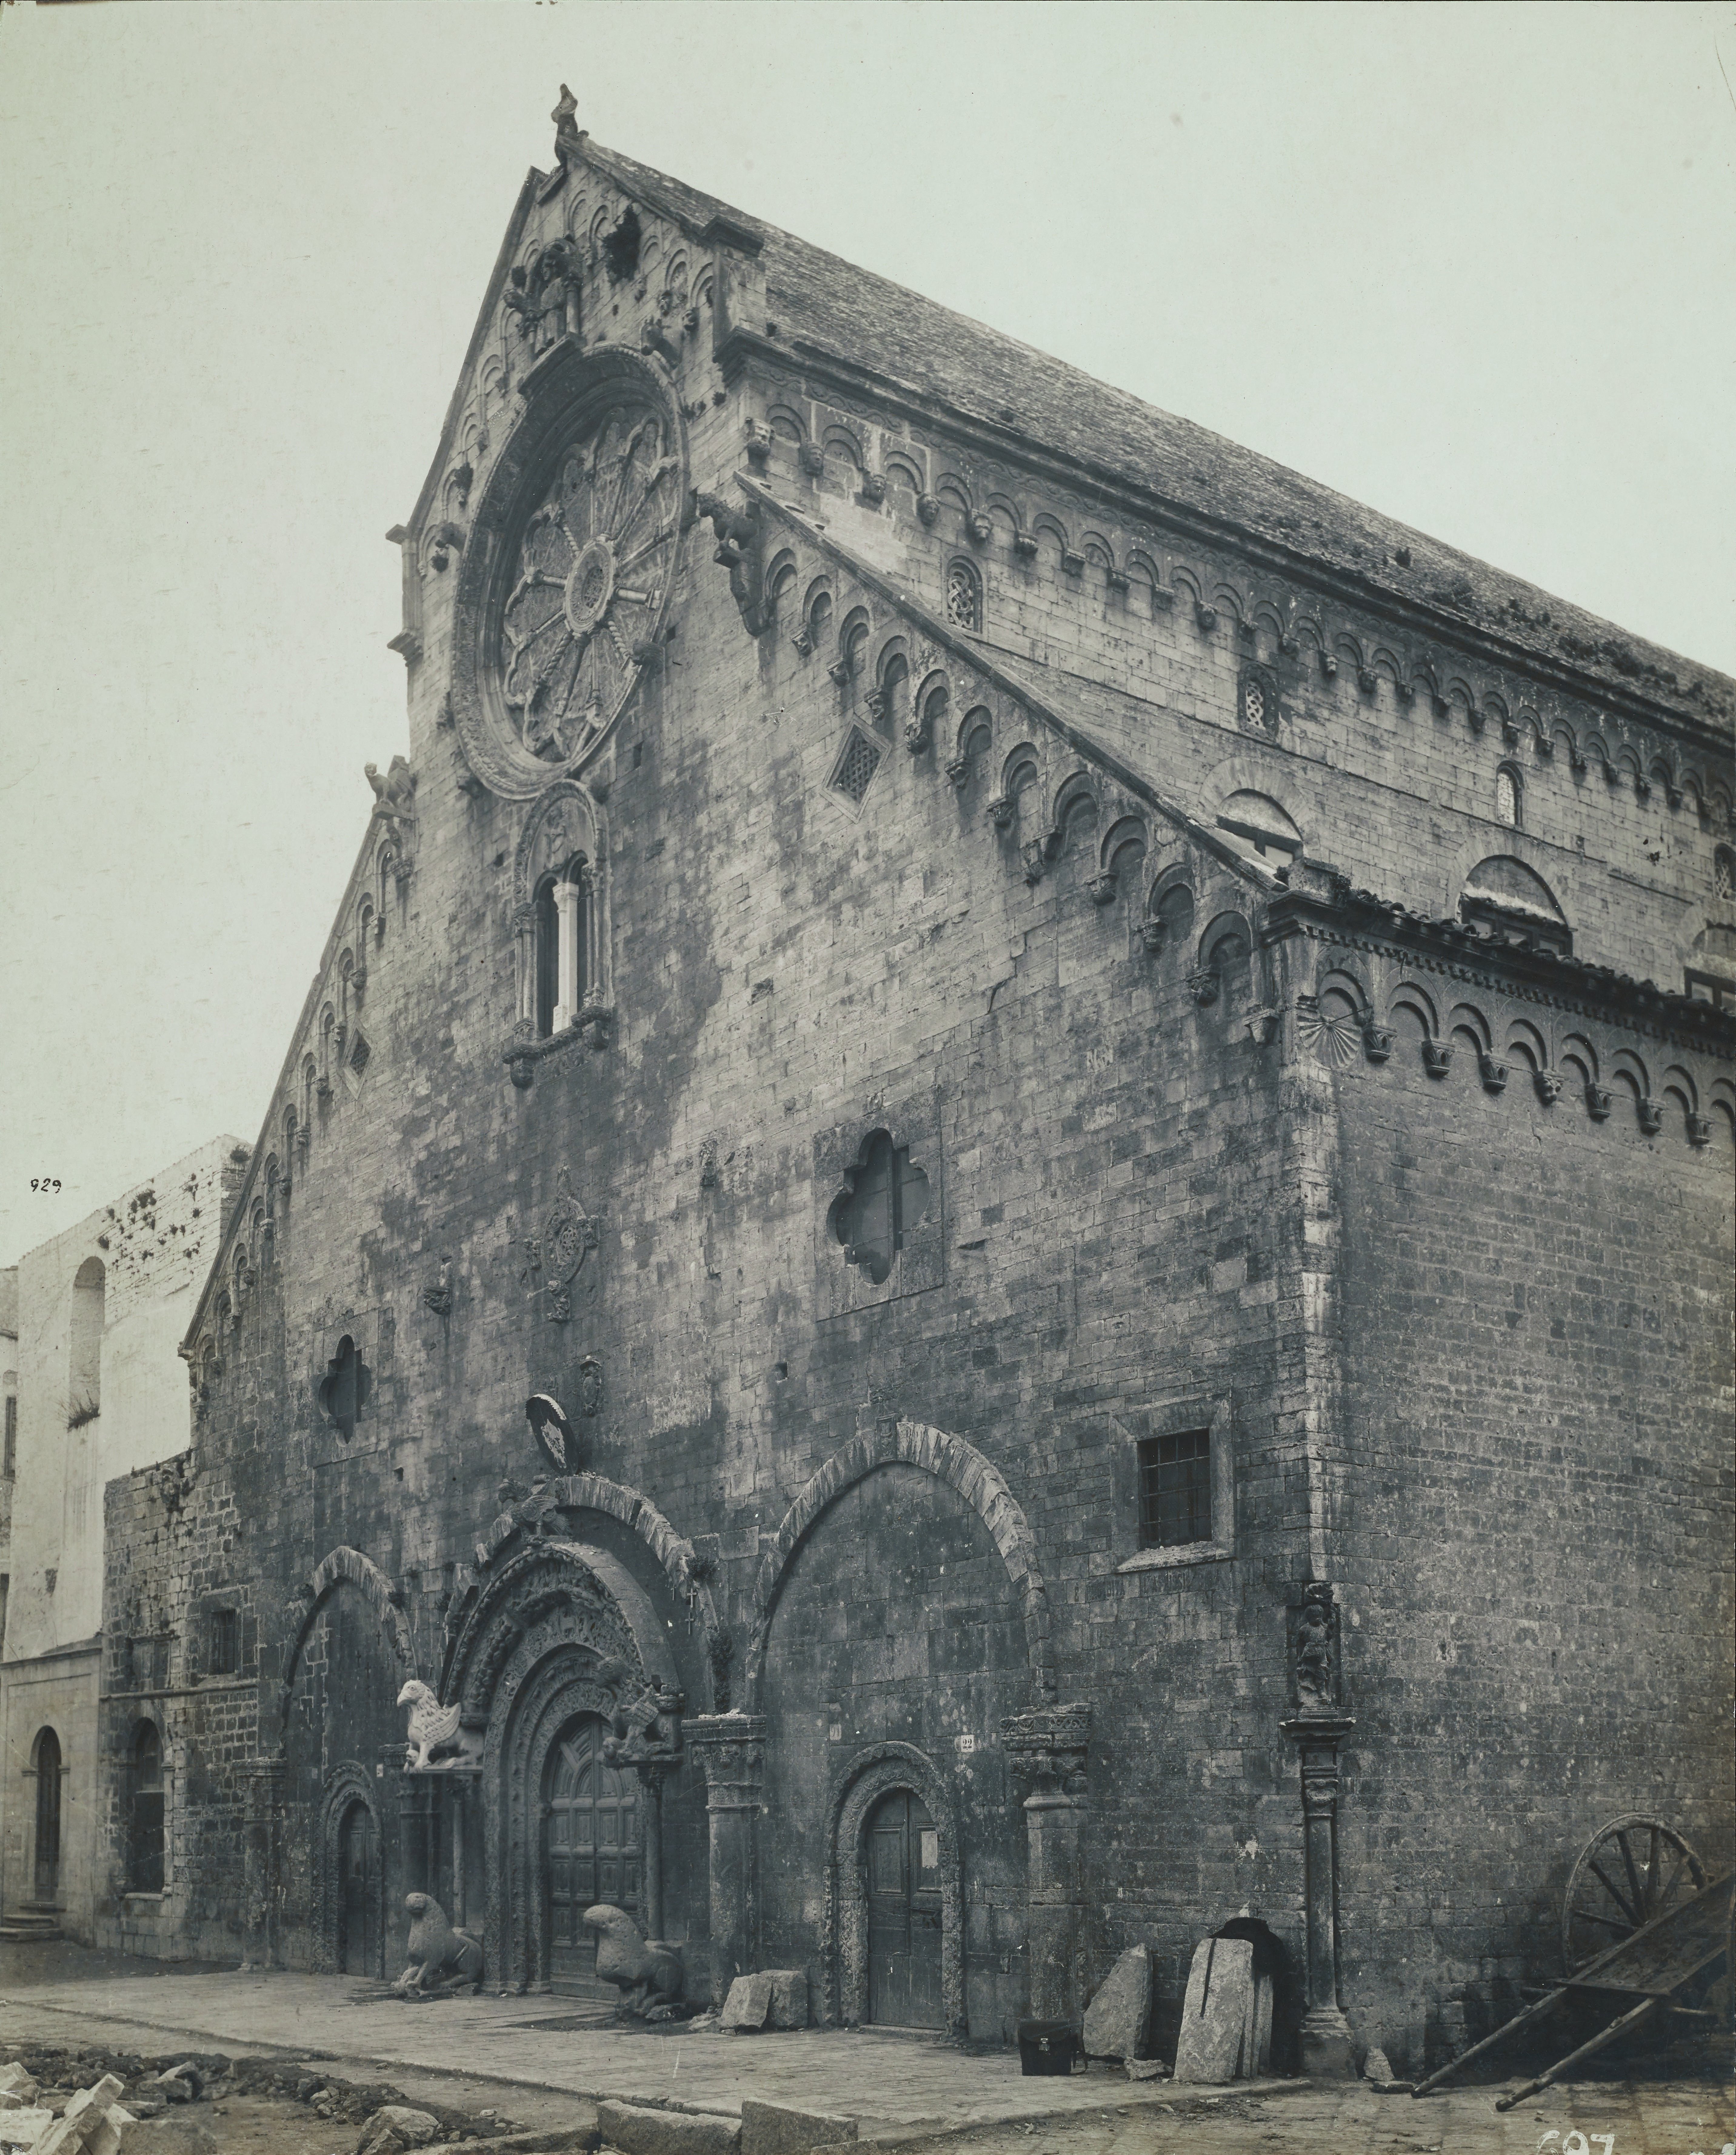 Fotografo non identificato, Ruvo di Puglia - Cattedrale S. Maria Assunta, facciata, 1926-1950, gelatina ai sali d'argento/carta, MPI6091650